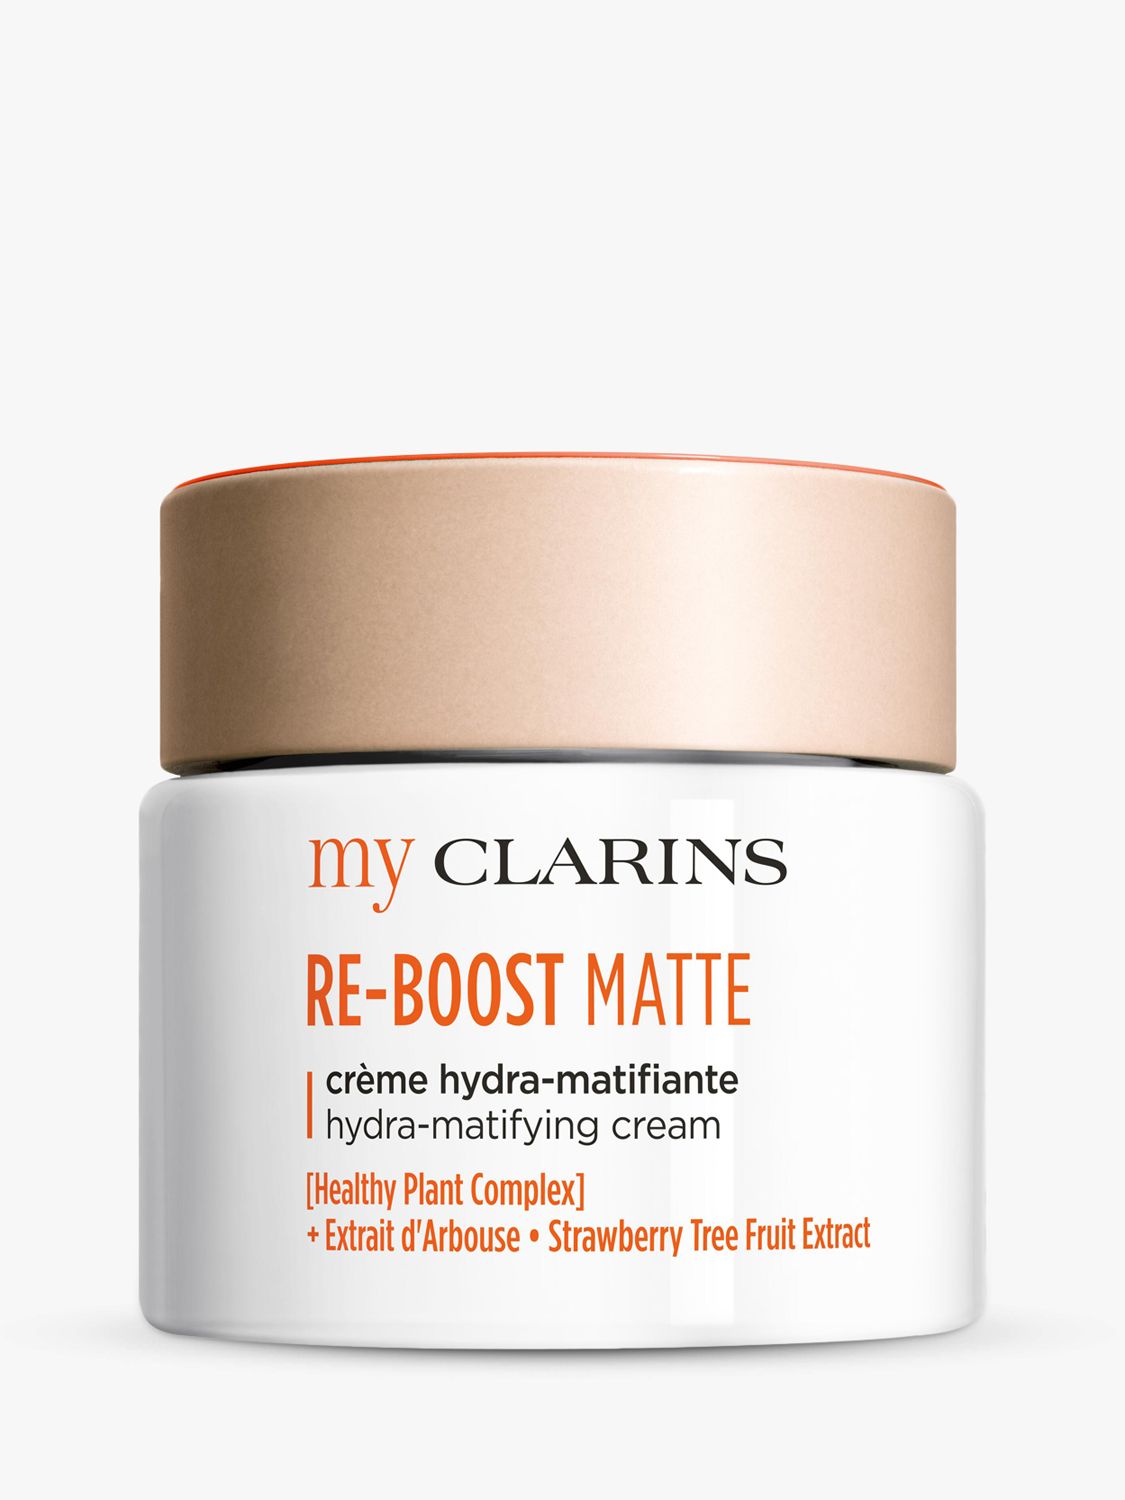 Clarins My Clarins RE-BOOST Matte Hydra-Mattifying Cream, 50ml 1